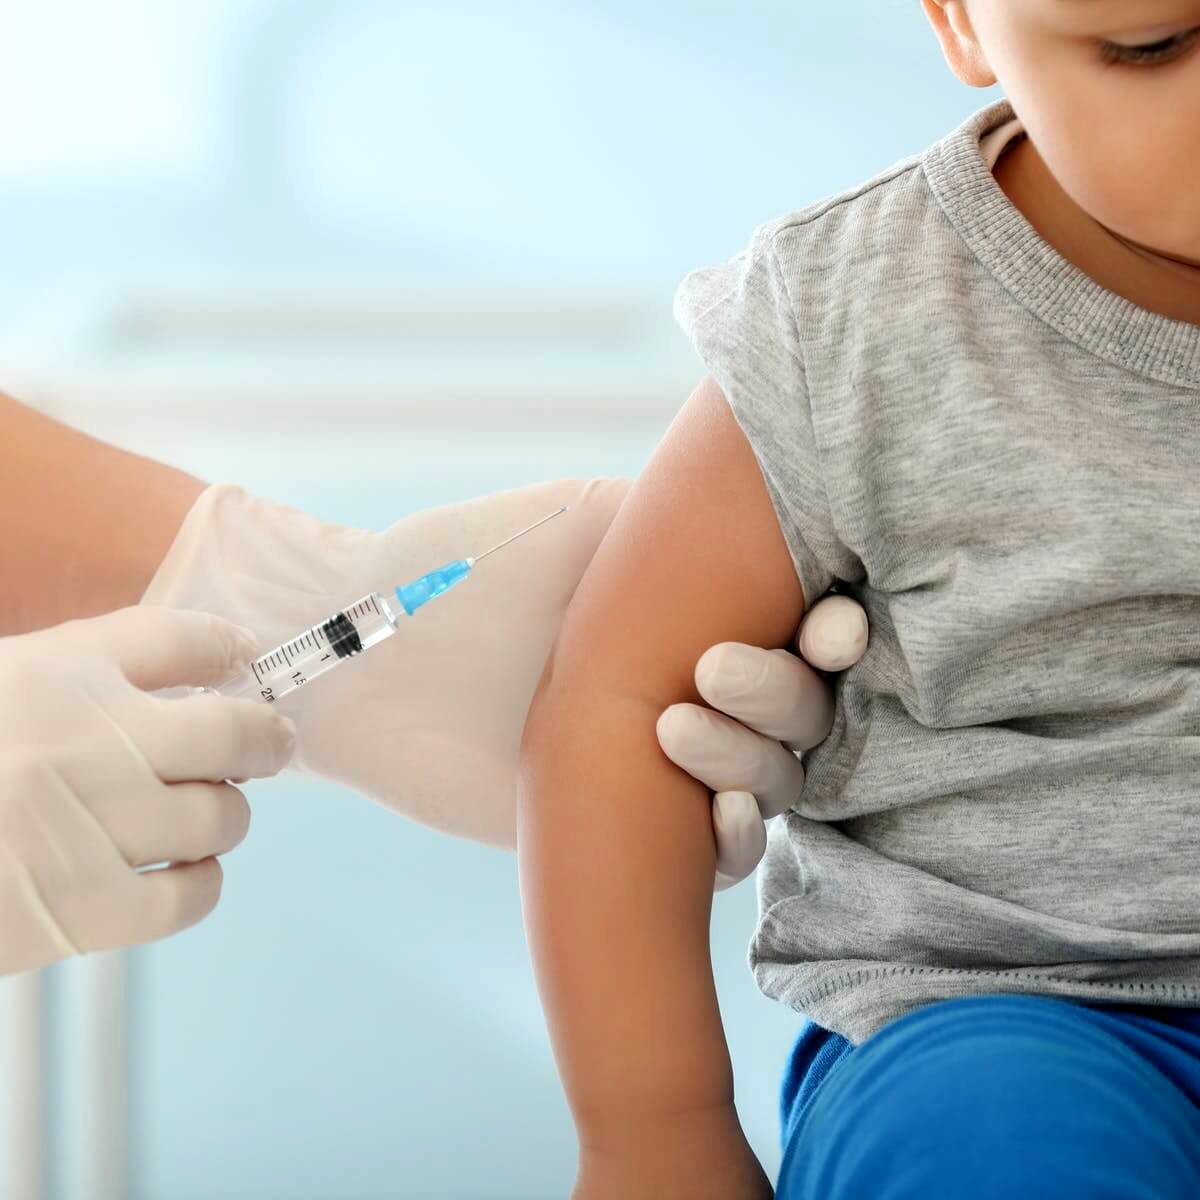 کودکان بالای 5سال  کدام واکسن را دریافت کنند؟